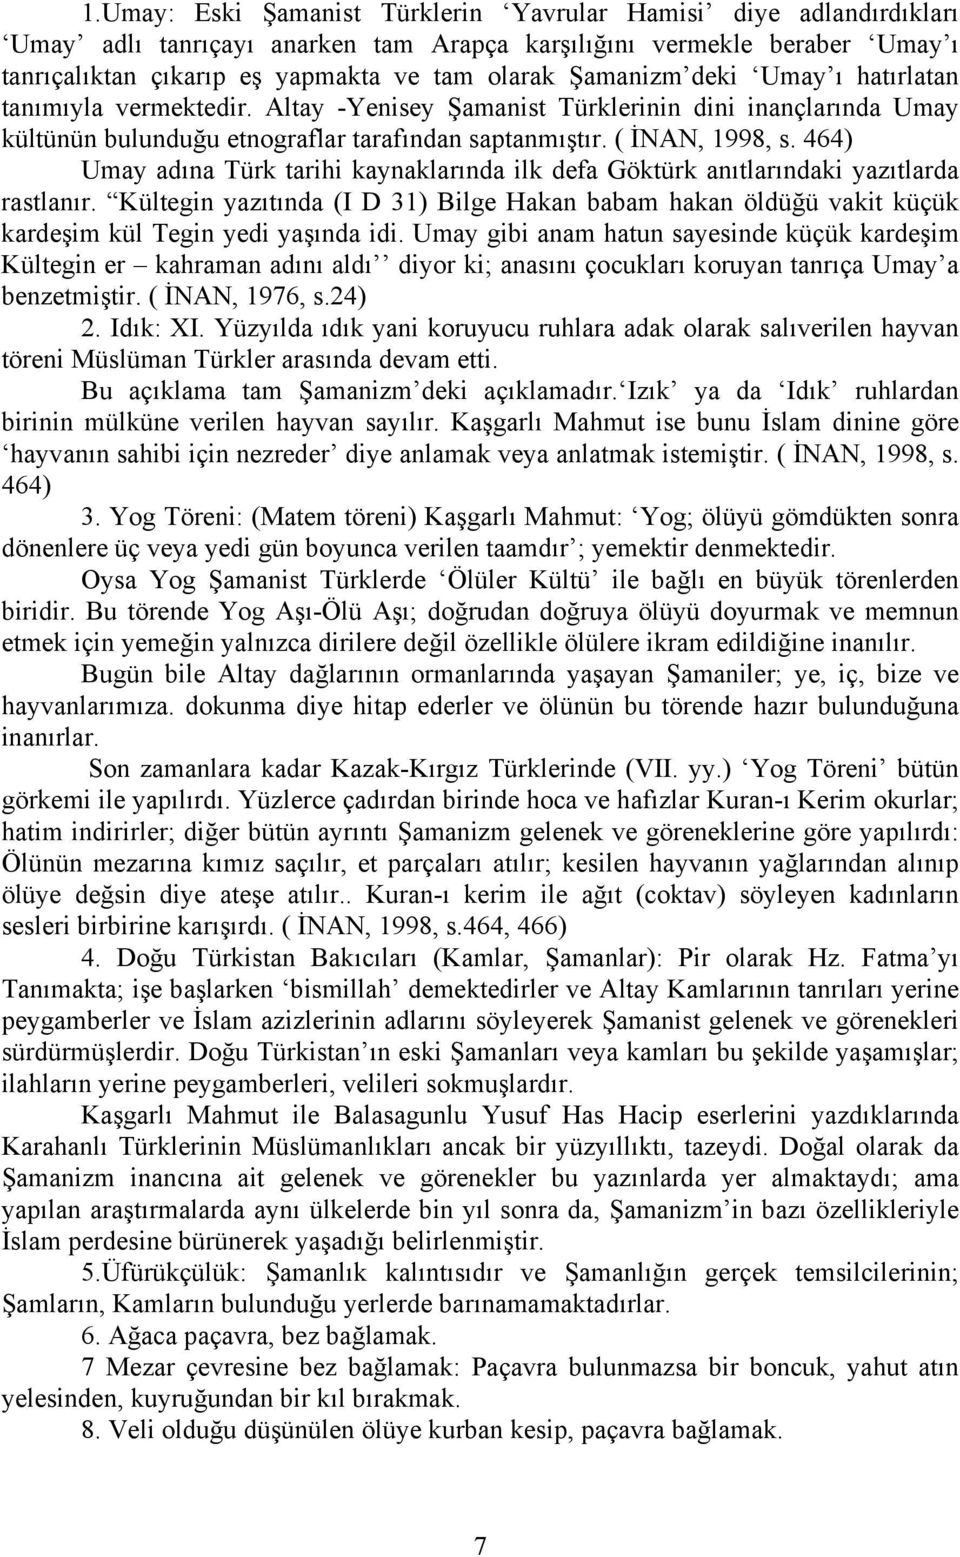 464) Umay adına Türk tarihi kaynaklarında ilk defa Göktürk anıtlarındaki yazıtlarda rastlanır.